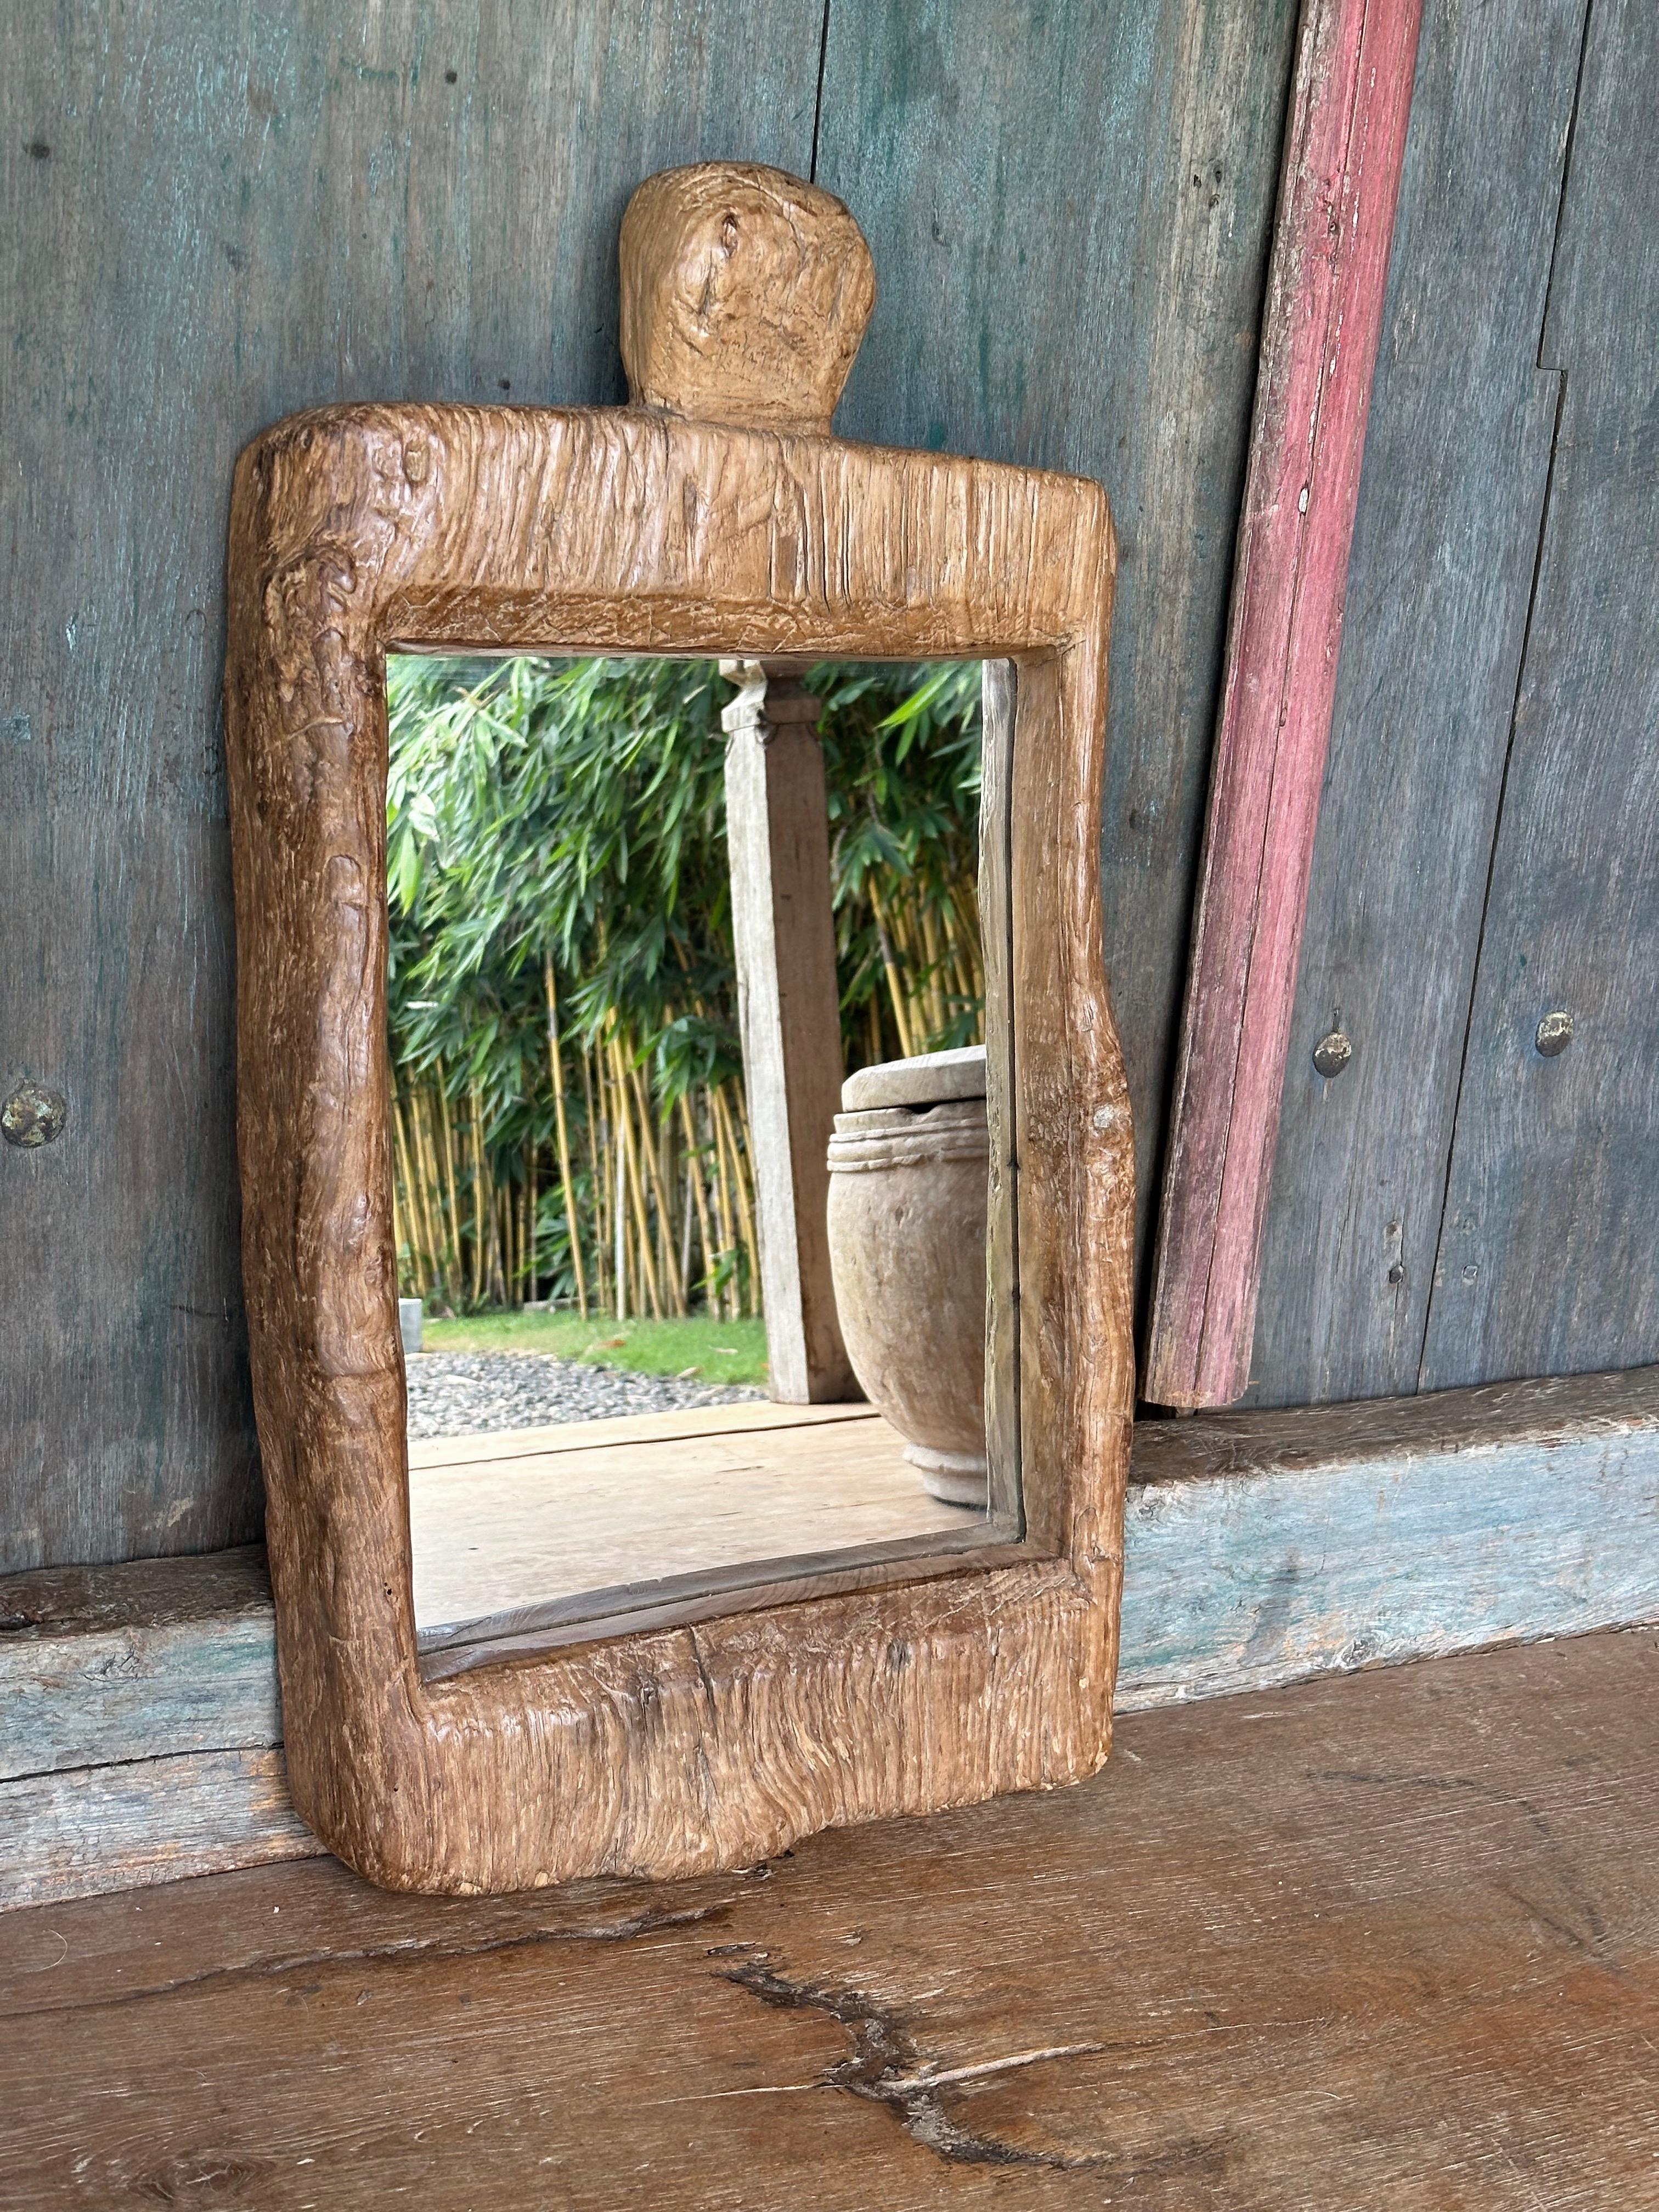 Ein wundervoller, einzigartiger Spiegel, der aus dem Holz einer antiken, massiven Teakholz-Lesung gefertigt wurde. Lesungs sind Reismörser, die auf der Insel Java zum Entfernen von Reishülsen verwendet werden. Das für diesen Spiegel verwendete Holz